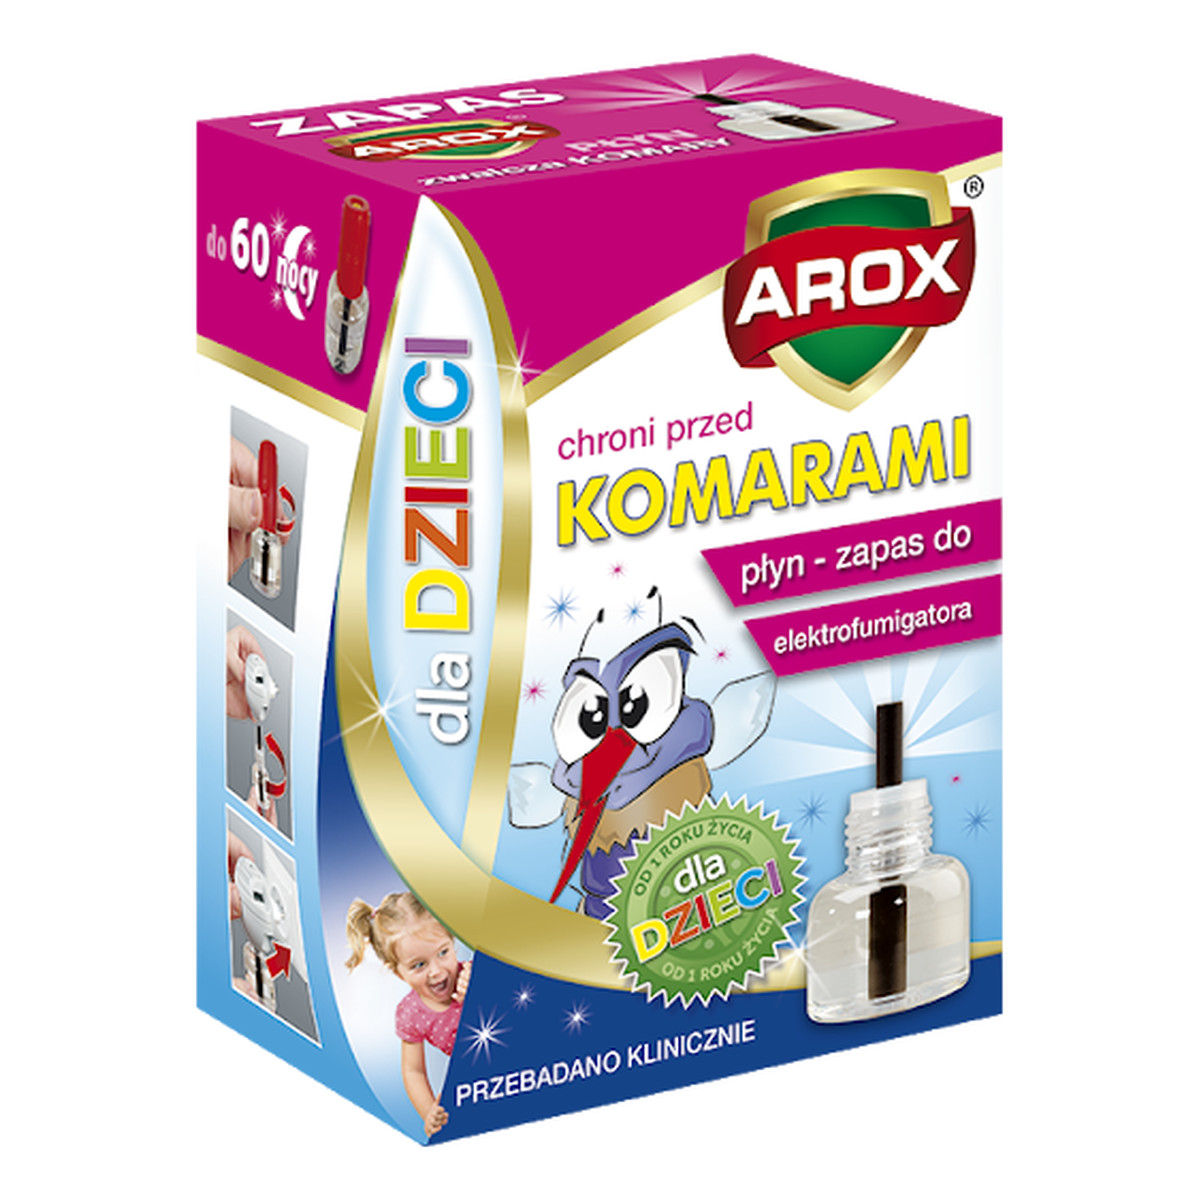 Arox Elektro płyn na komary dla dzieci Elektrofumigator + płyn 60 nocy